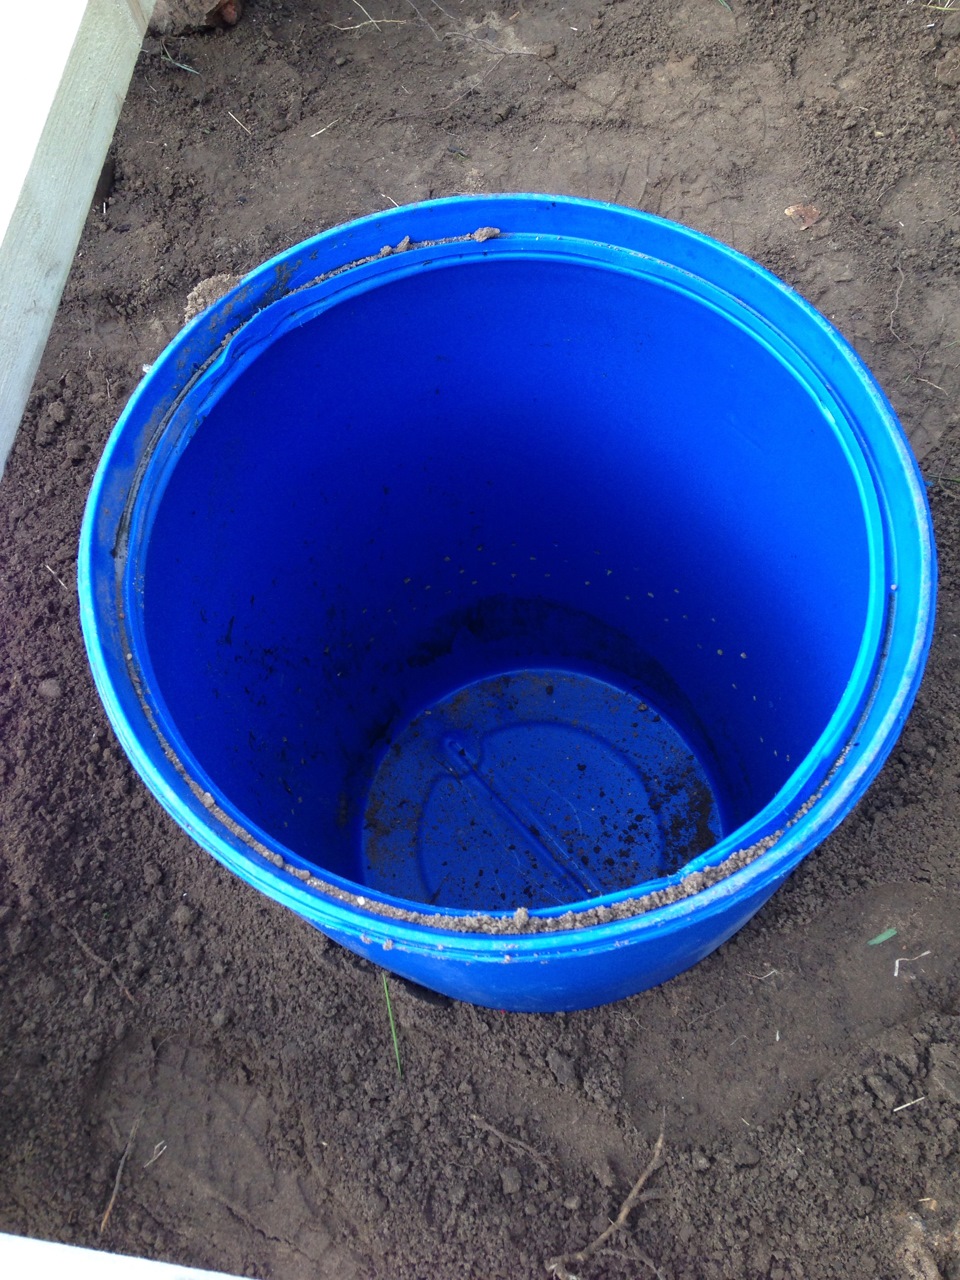 Как сделать выгребную яму из бочки для дачного туалета